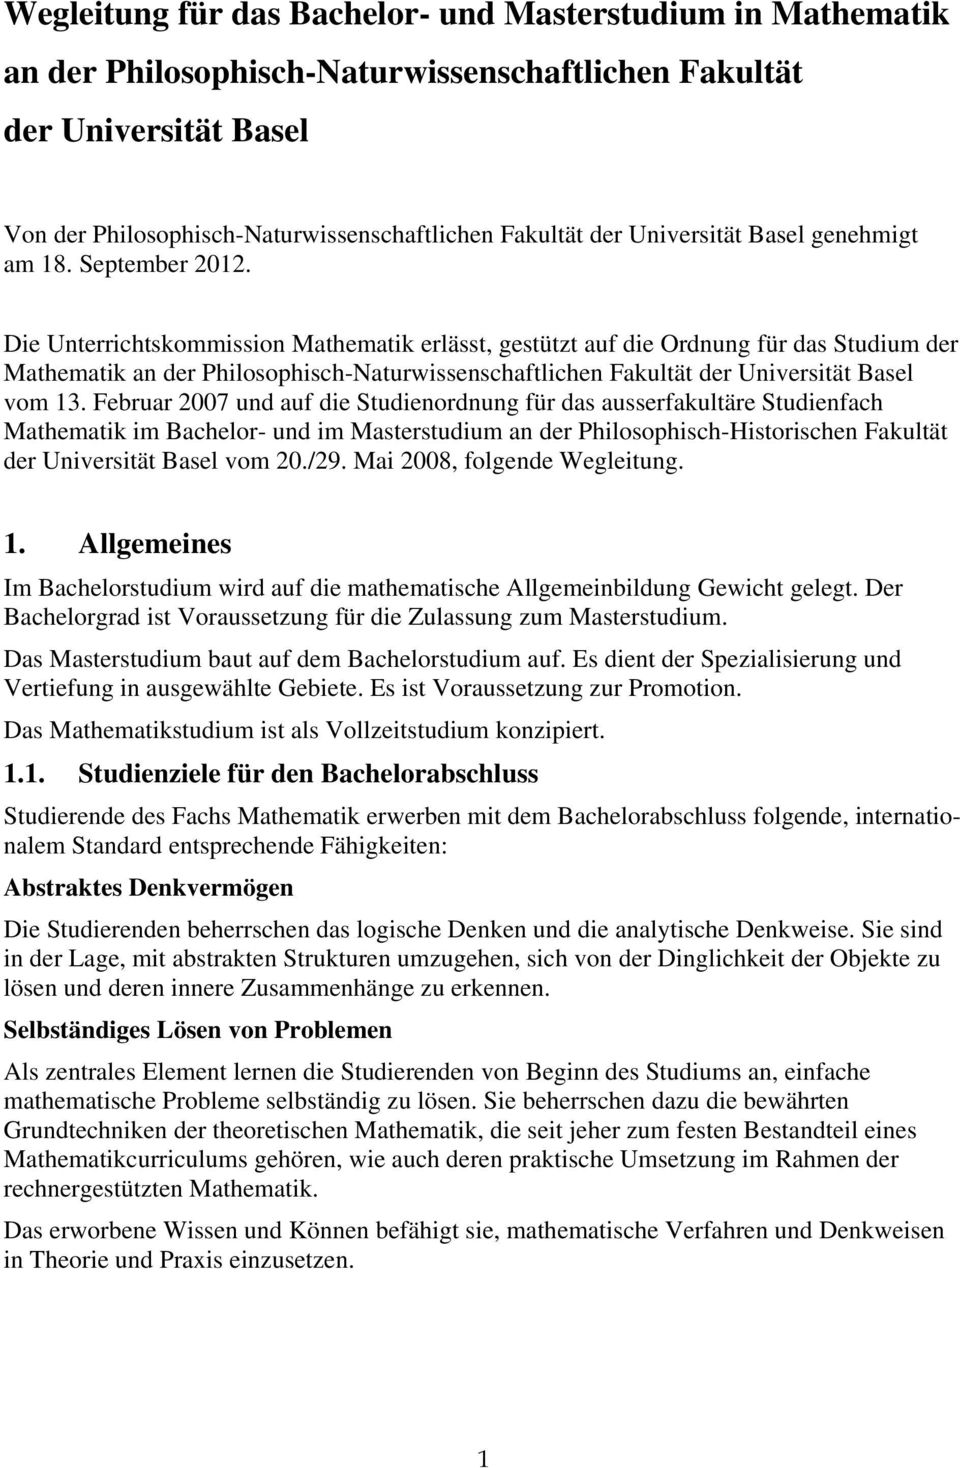 Die Unterrichtskommission Mathematik erlässt, gestützt auf die Ordnung für das Studium der Mathematik an der Philosophisch-Naturwissenschaftlichen Fakultät der Universität Basel vom 13.